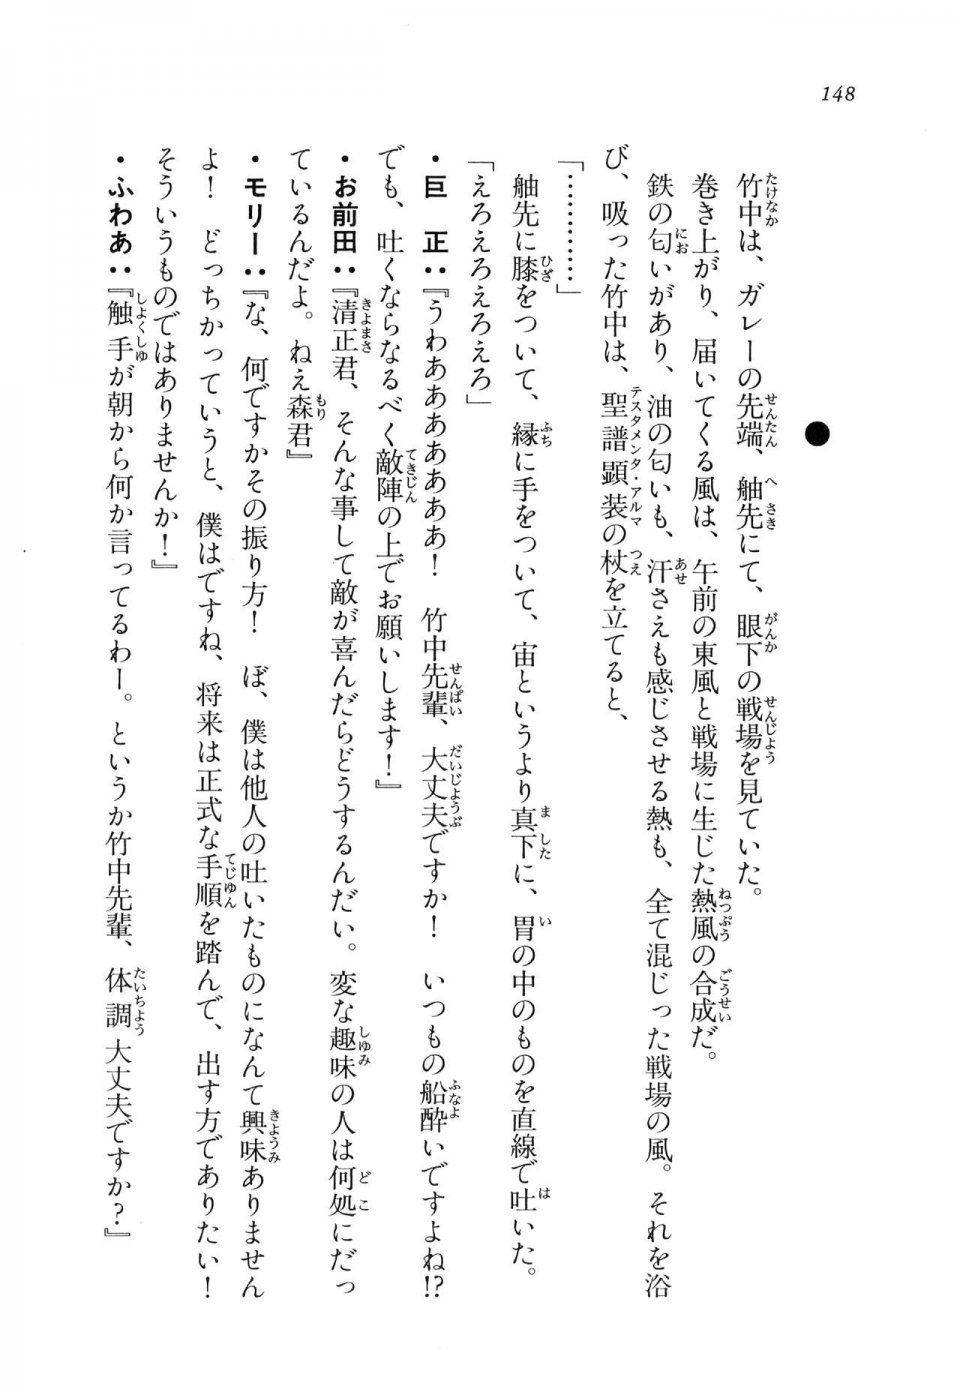 Kyoukai Senjou no Horizon LN Vol 11(5A) - Photo #148